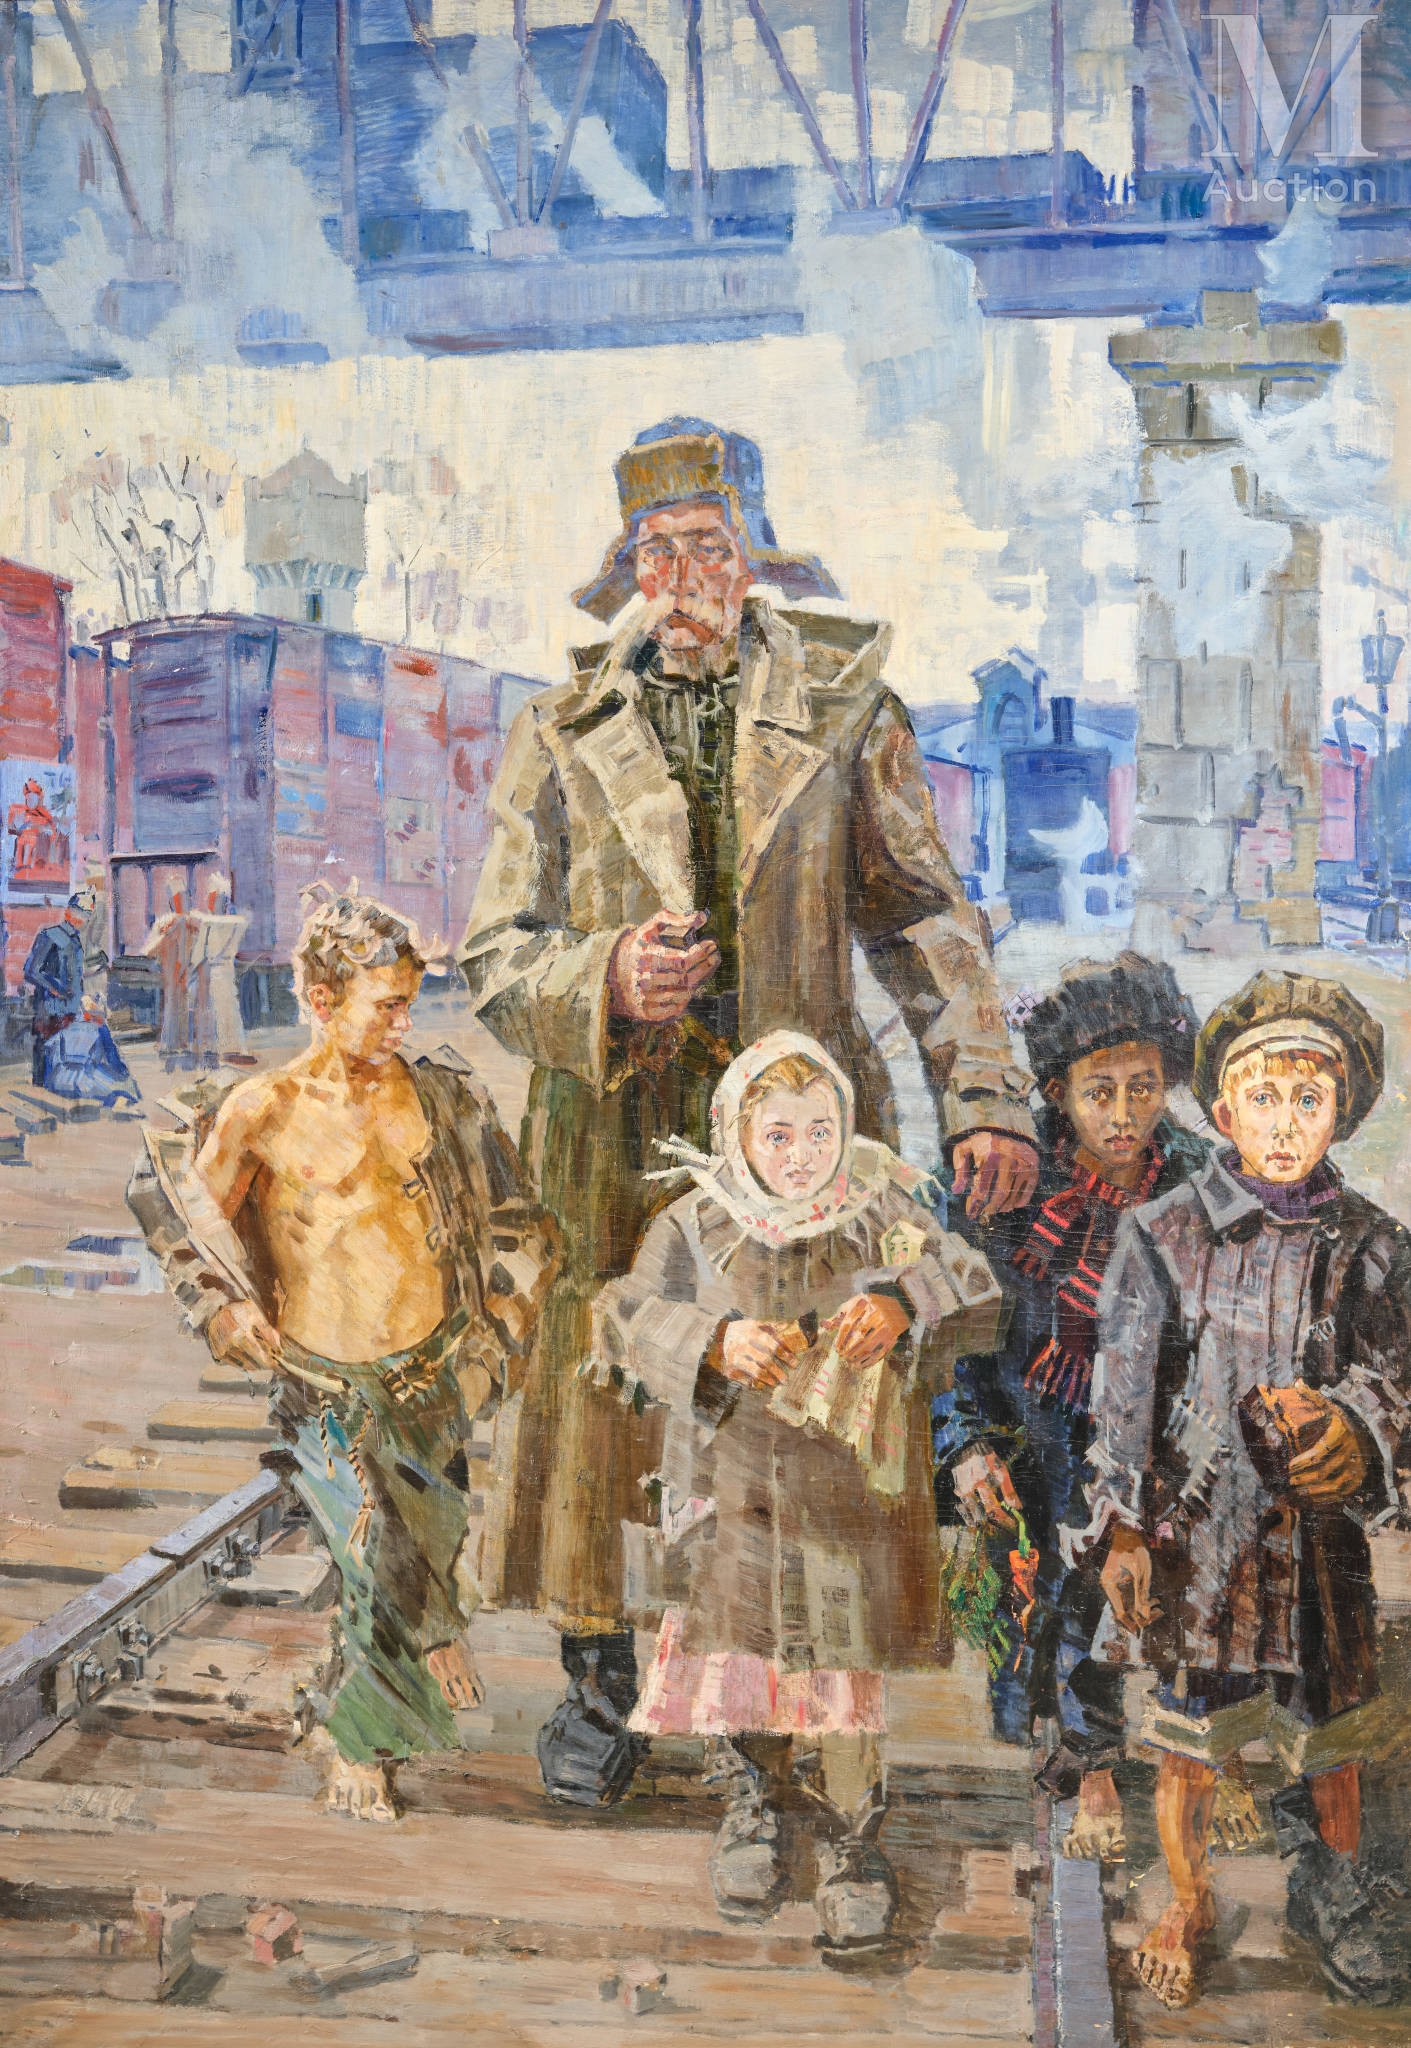 L’ingénieur des Ponts et Chaussées et les enfants sans abris by Nicolaï Gorlov, 1962